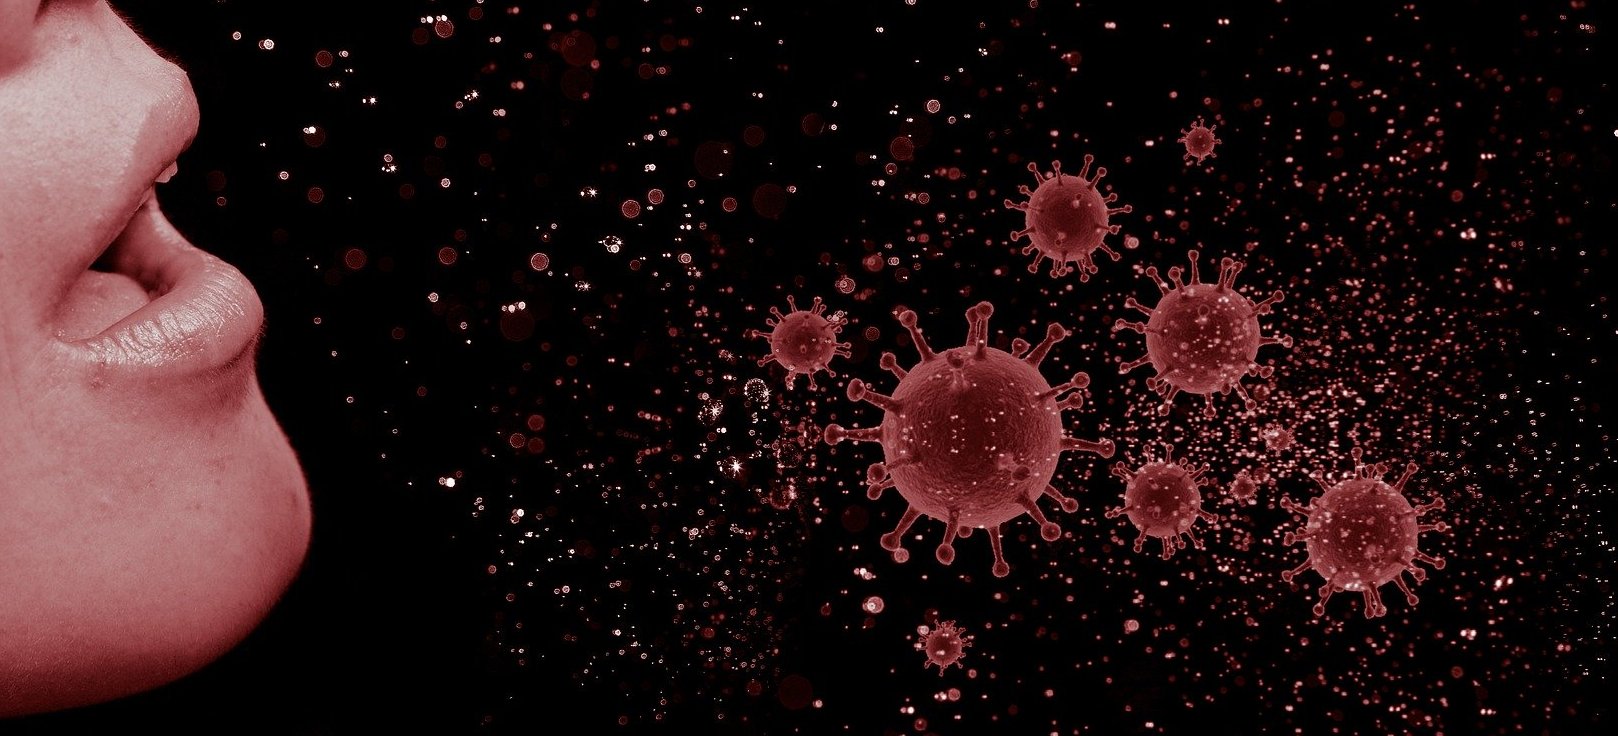 El coronavirus se transmite por el aire? La OMS admite ahora que hay  posibilidad de transmisión por aerosoles pero pide más investigación* -  Maldita.es